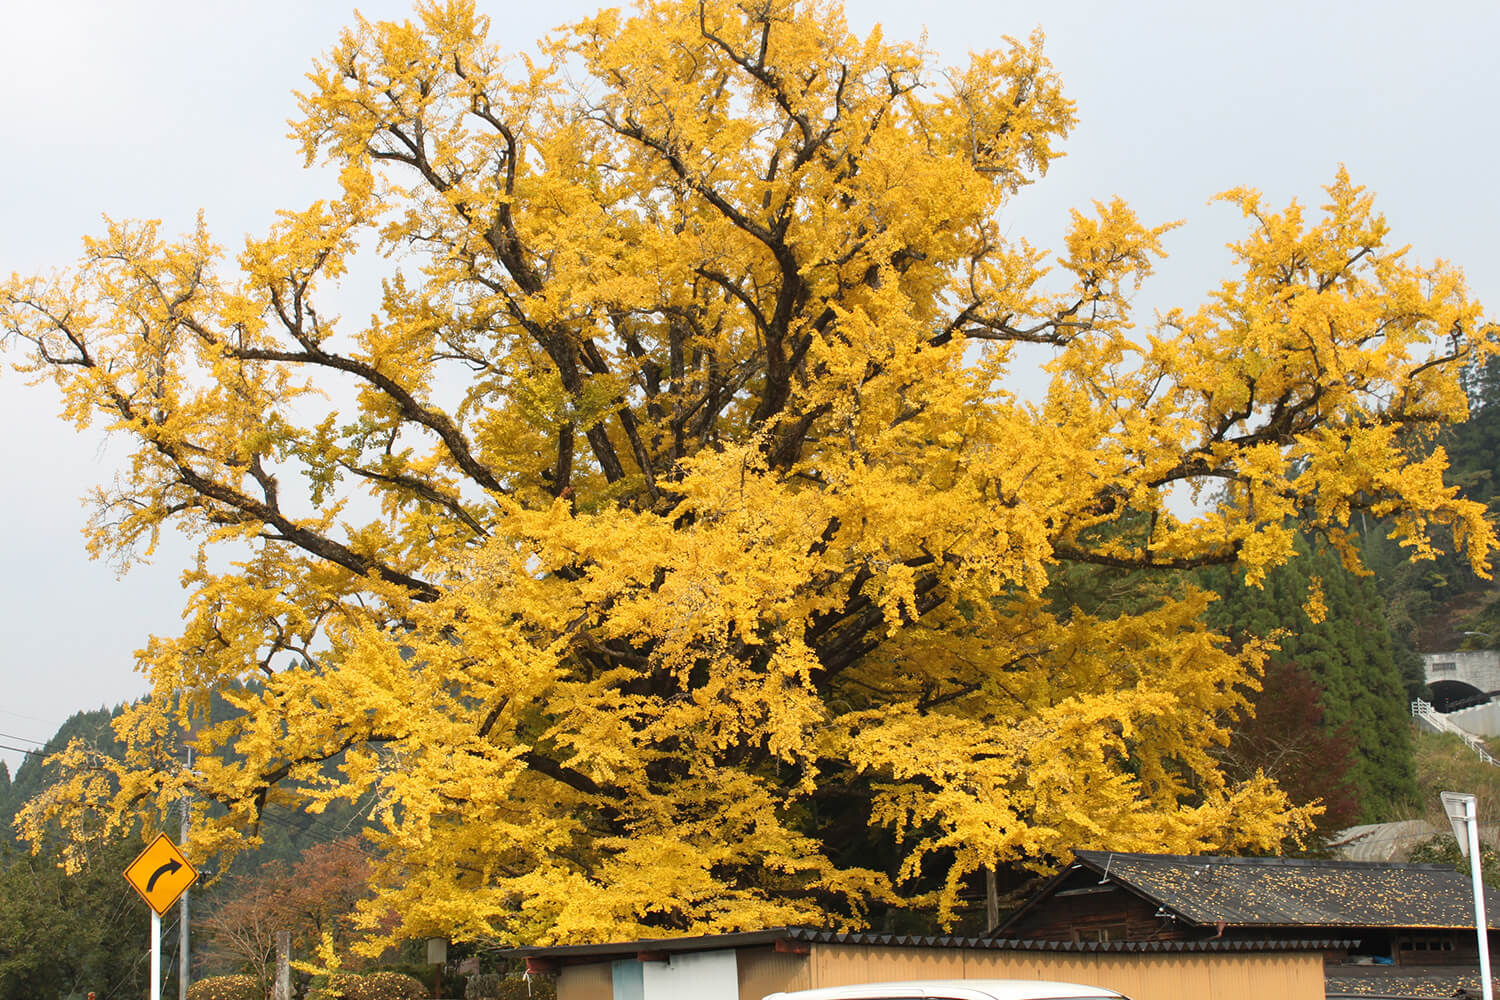 熊本県で最大のイチョウの木。地面には一面、黄色の絨毯が広がる